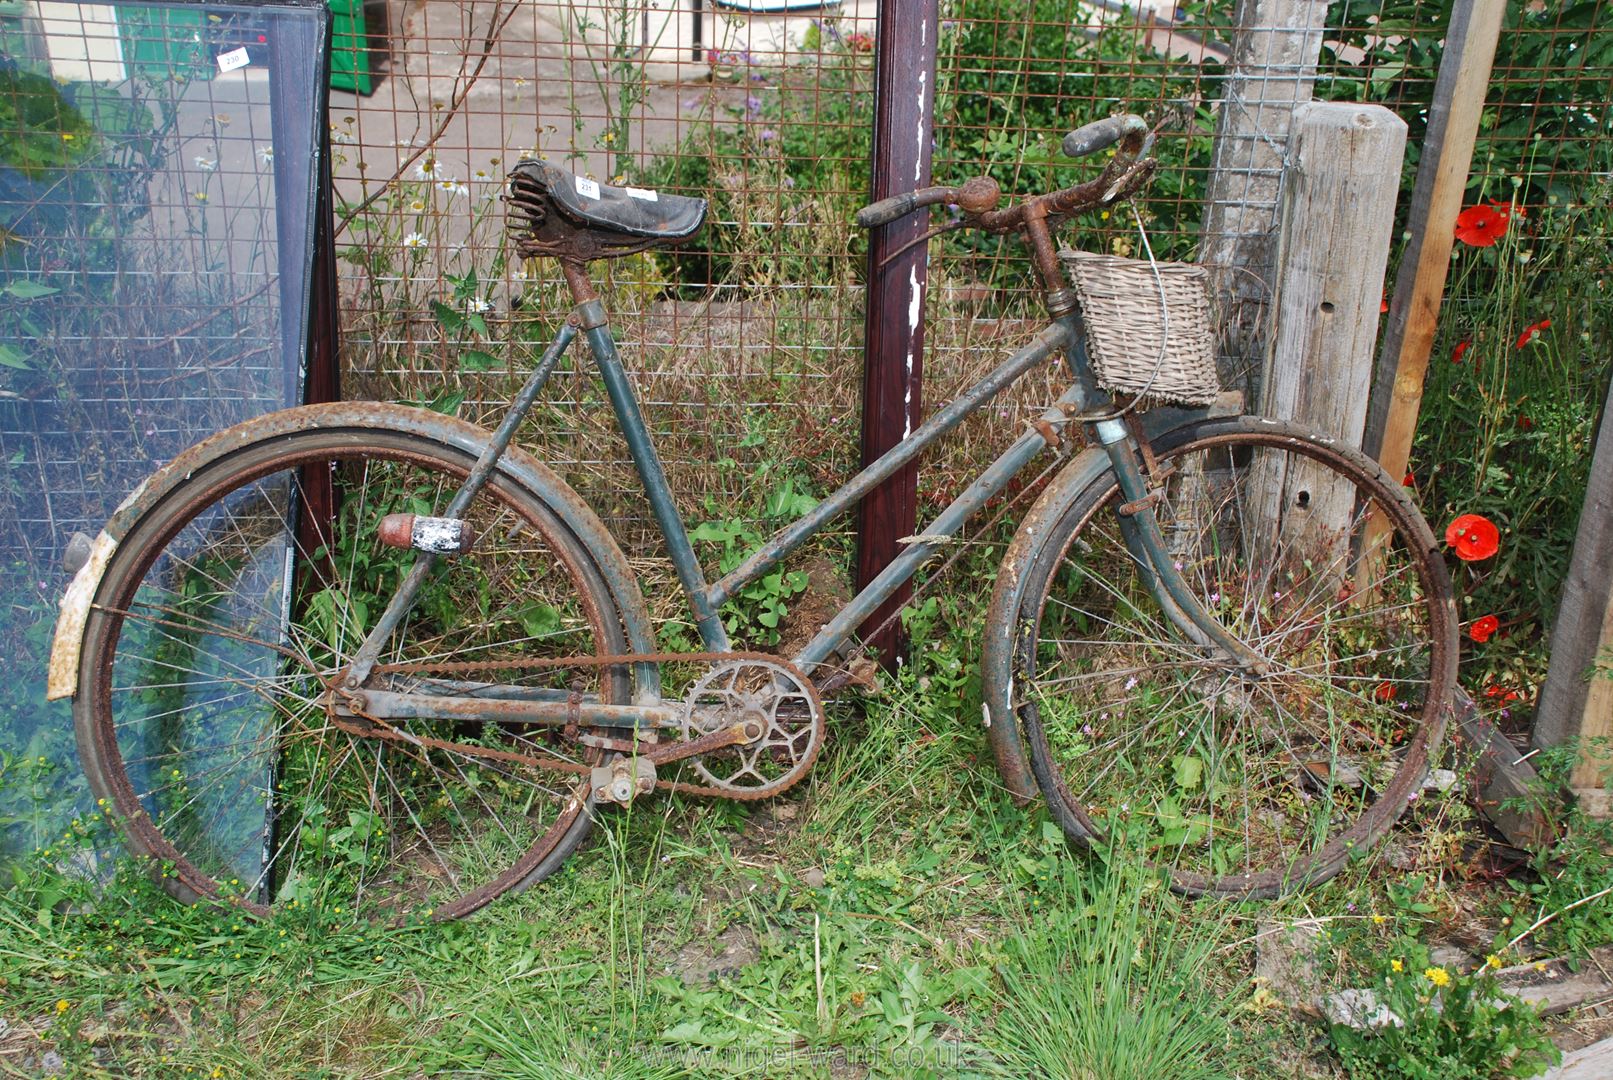 A ladies vintage 3 speed bicycle.